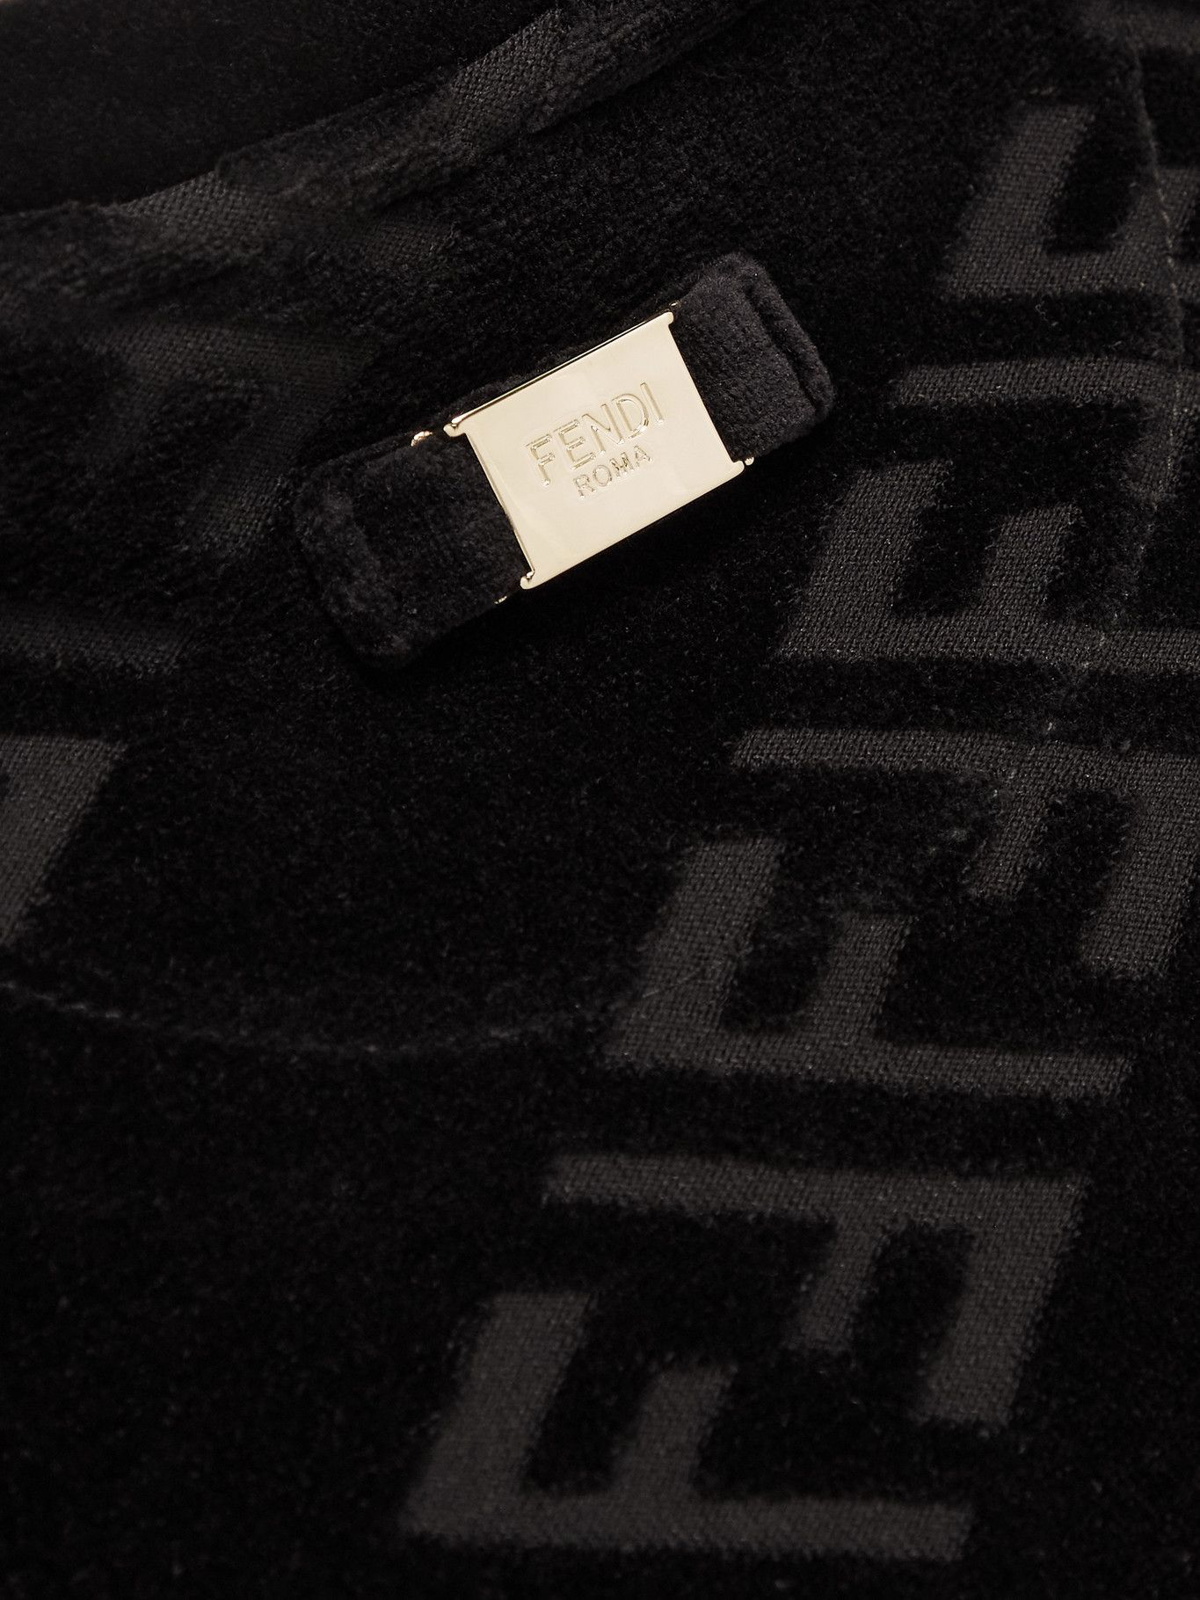 Fendi Ff Logo Flocked T-shirt in Black for Men